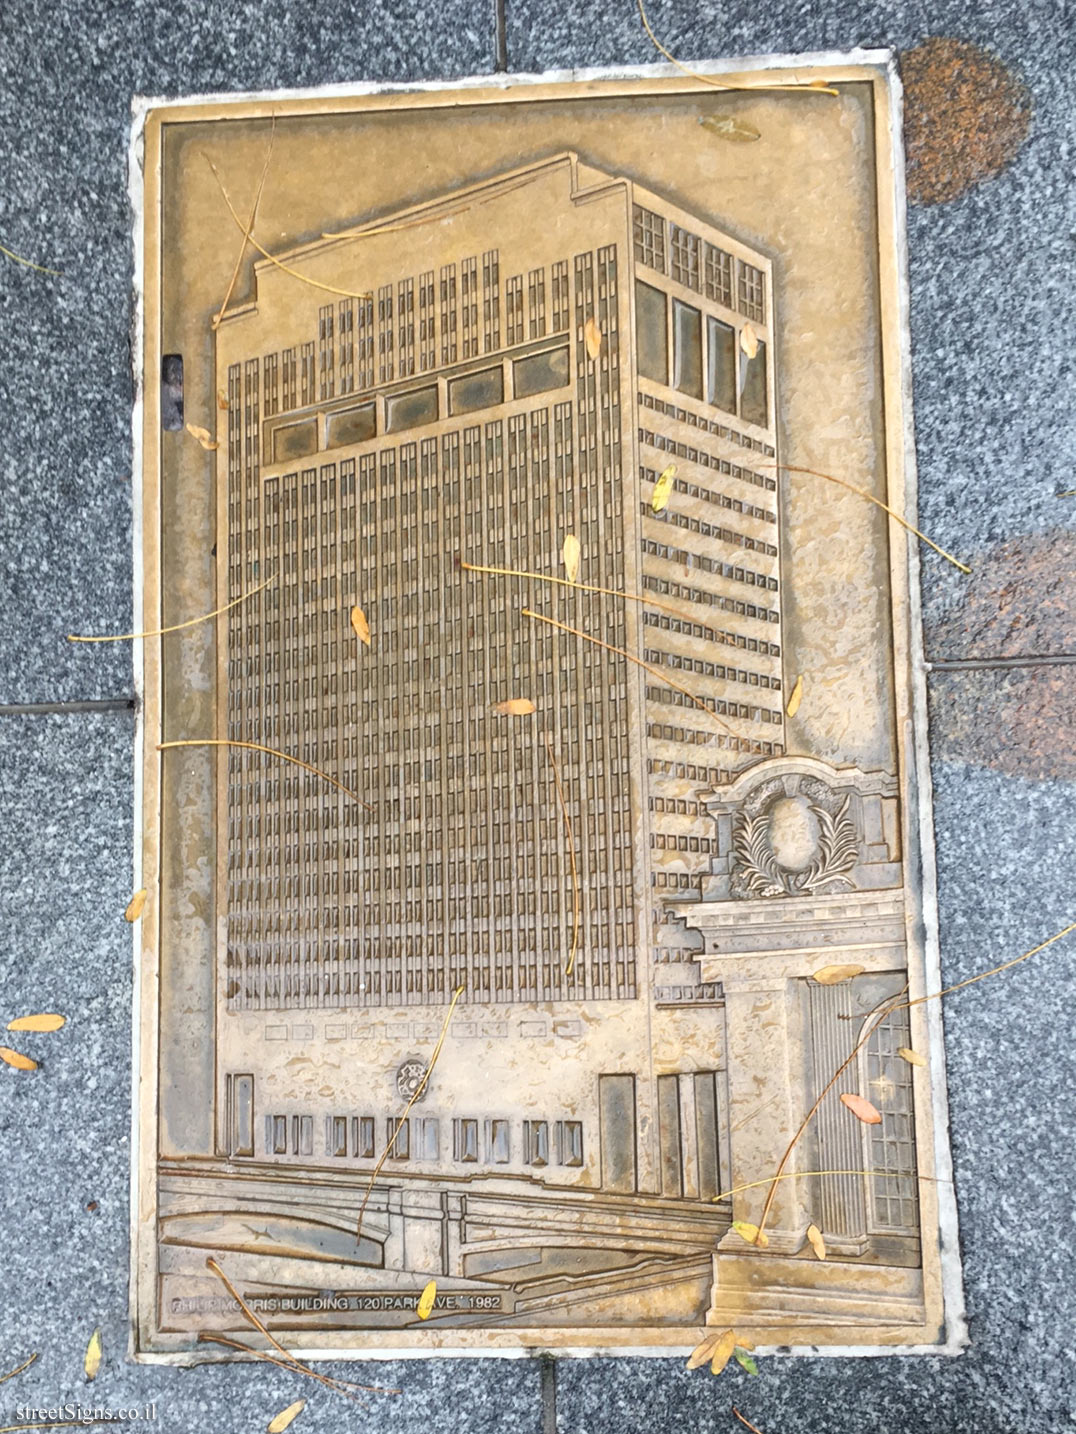 New York - Park Avenue plaques - Philip Morris Building